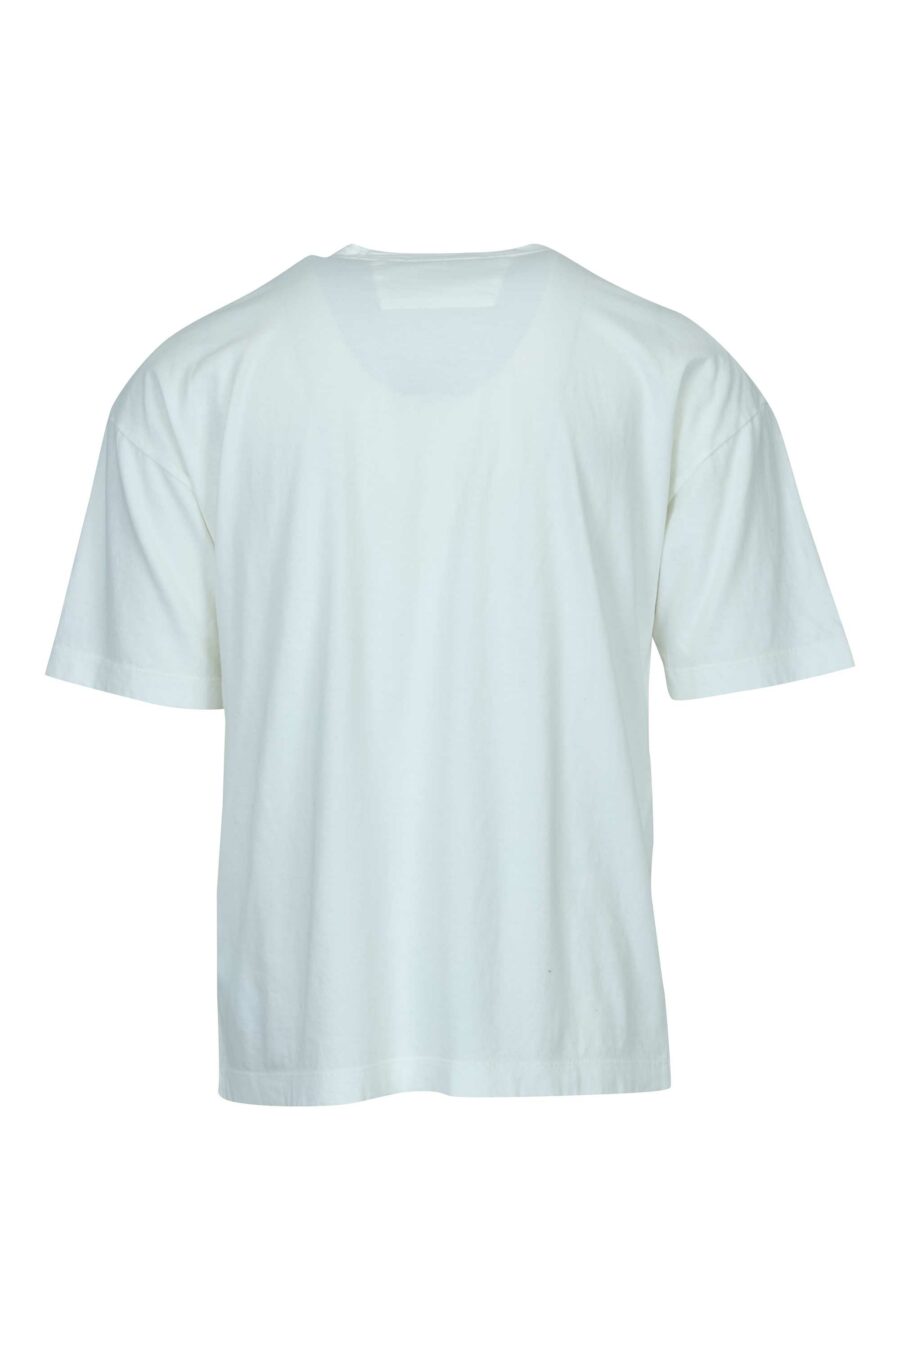 Weißes Oversize-T-Shirt mit Minilogue "cp 989" - 7620943818840 1